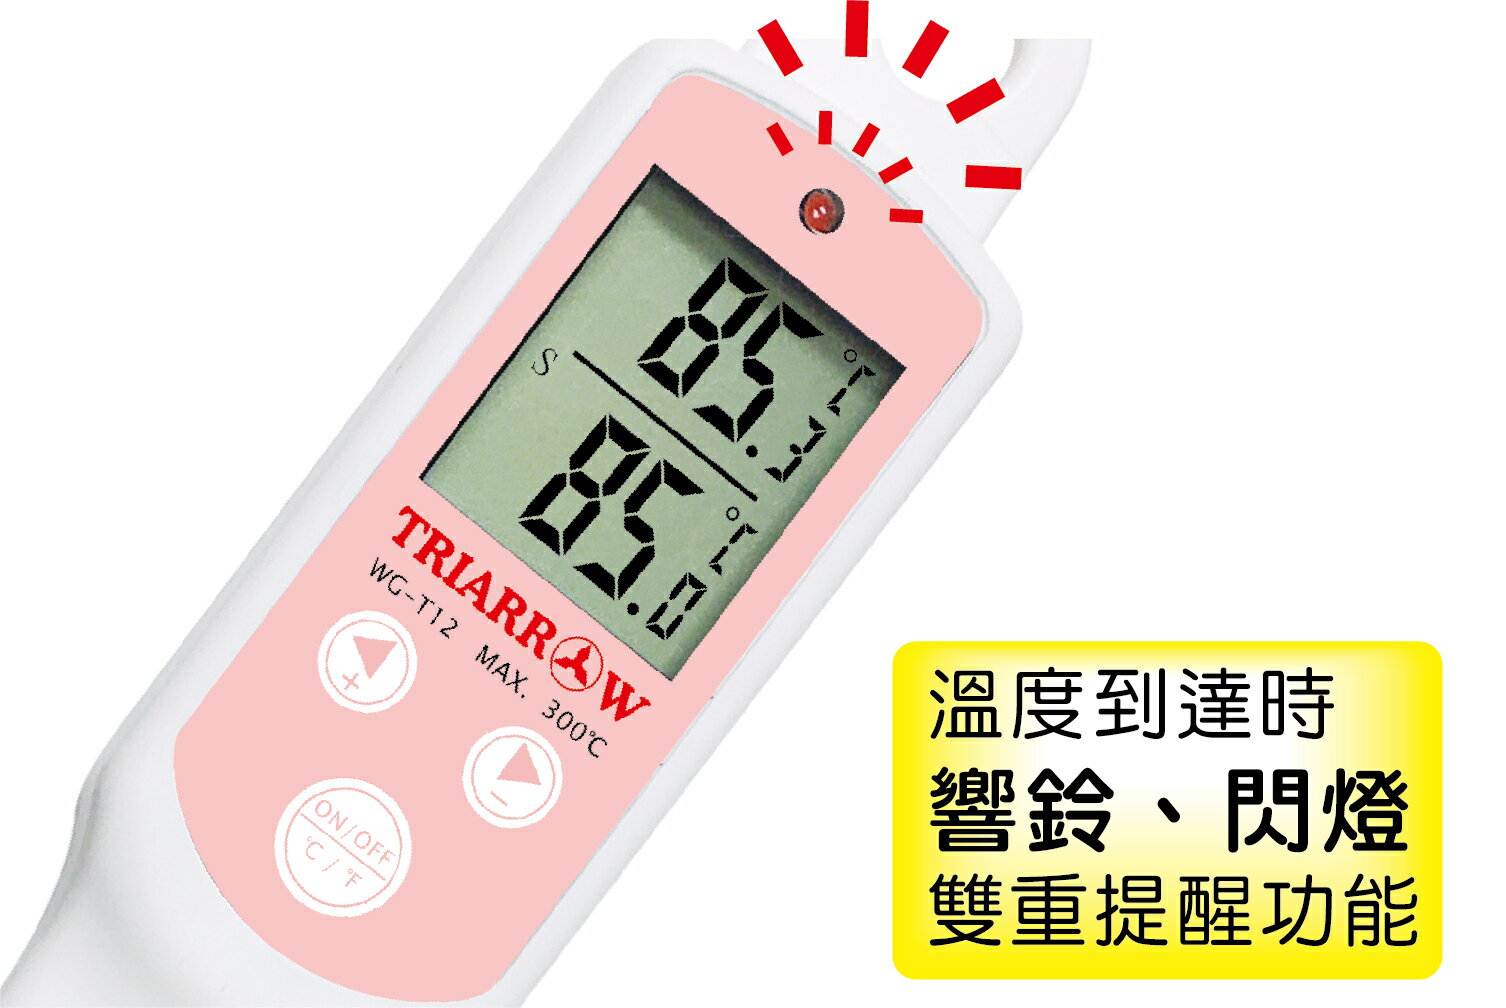 響鈴大視窗WG-T12電子溫度計250度 食品溫度計 料理溫度計 溫度測量 不鏽鋼探針 響鈴設計(伊凡卡百貨)